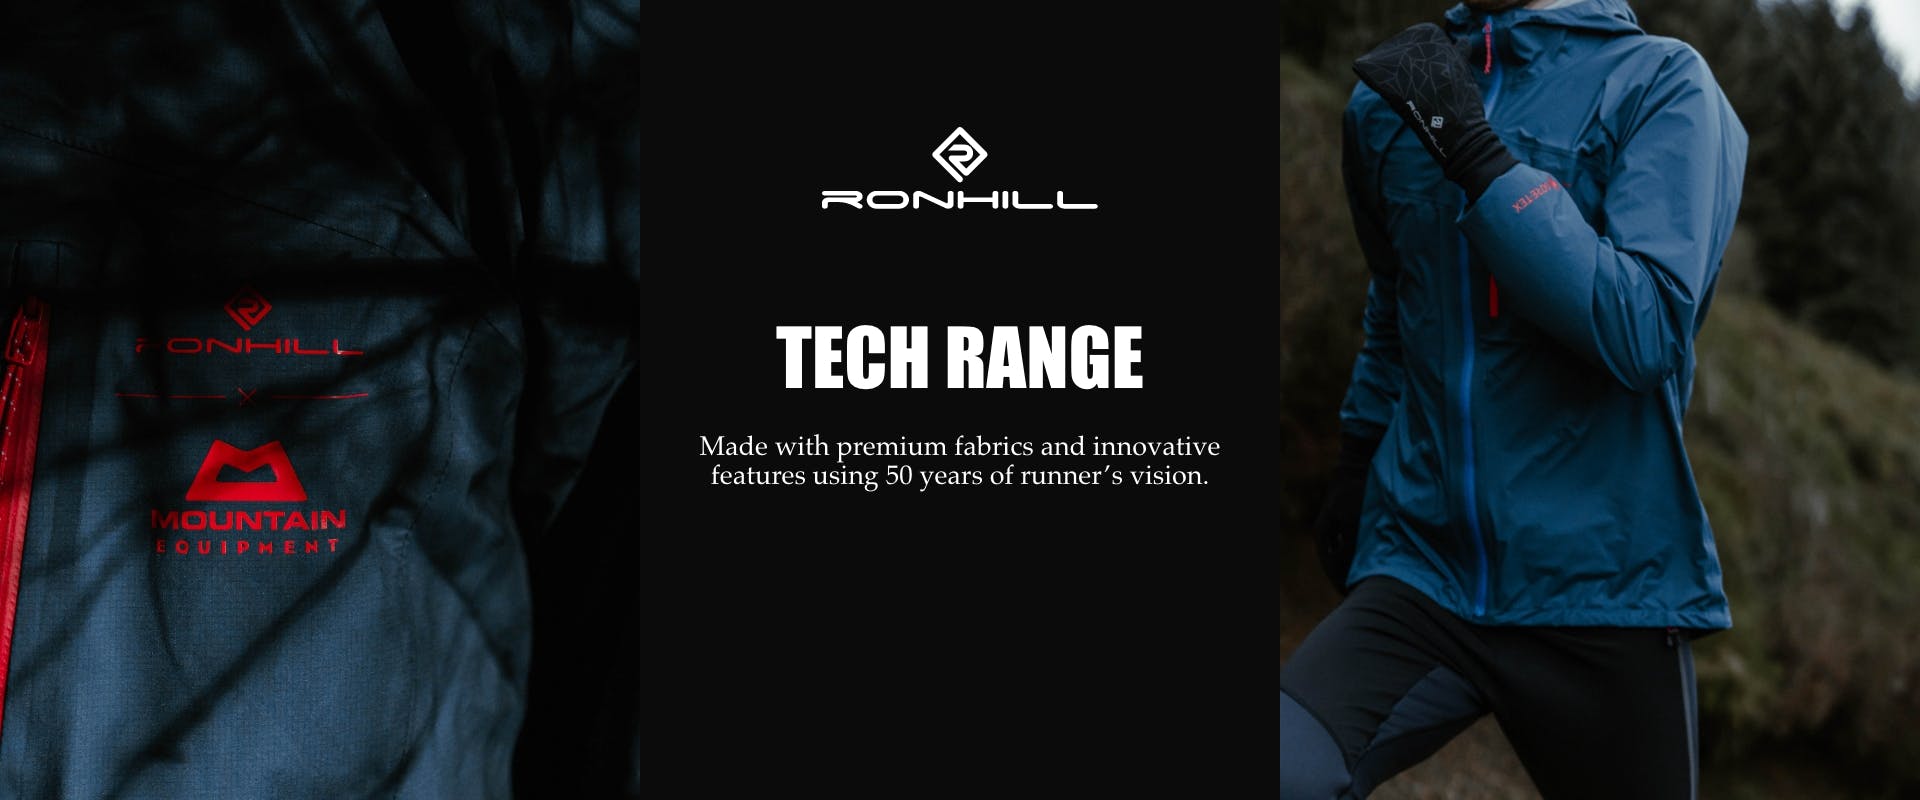 Tech-range